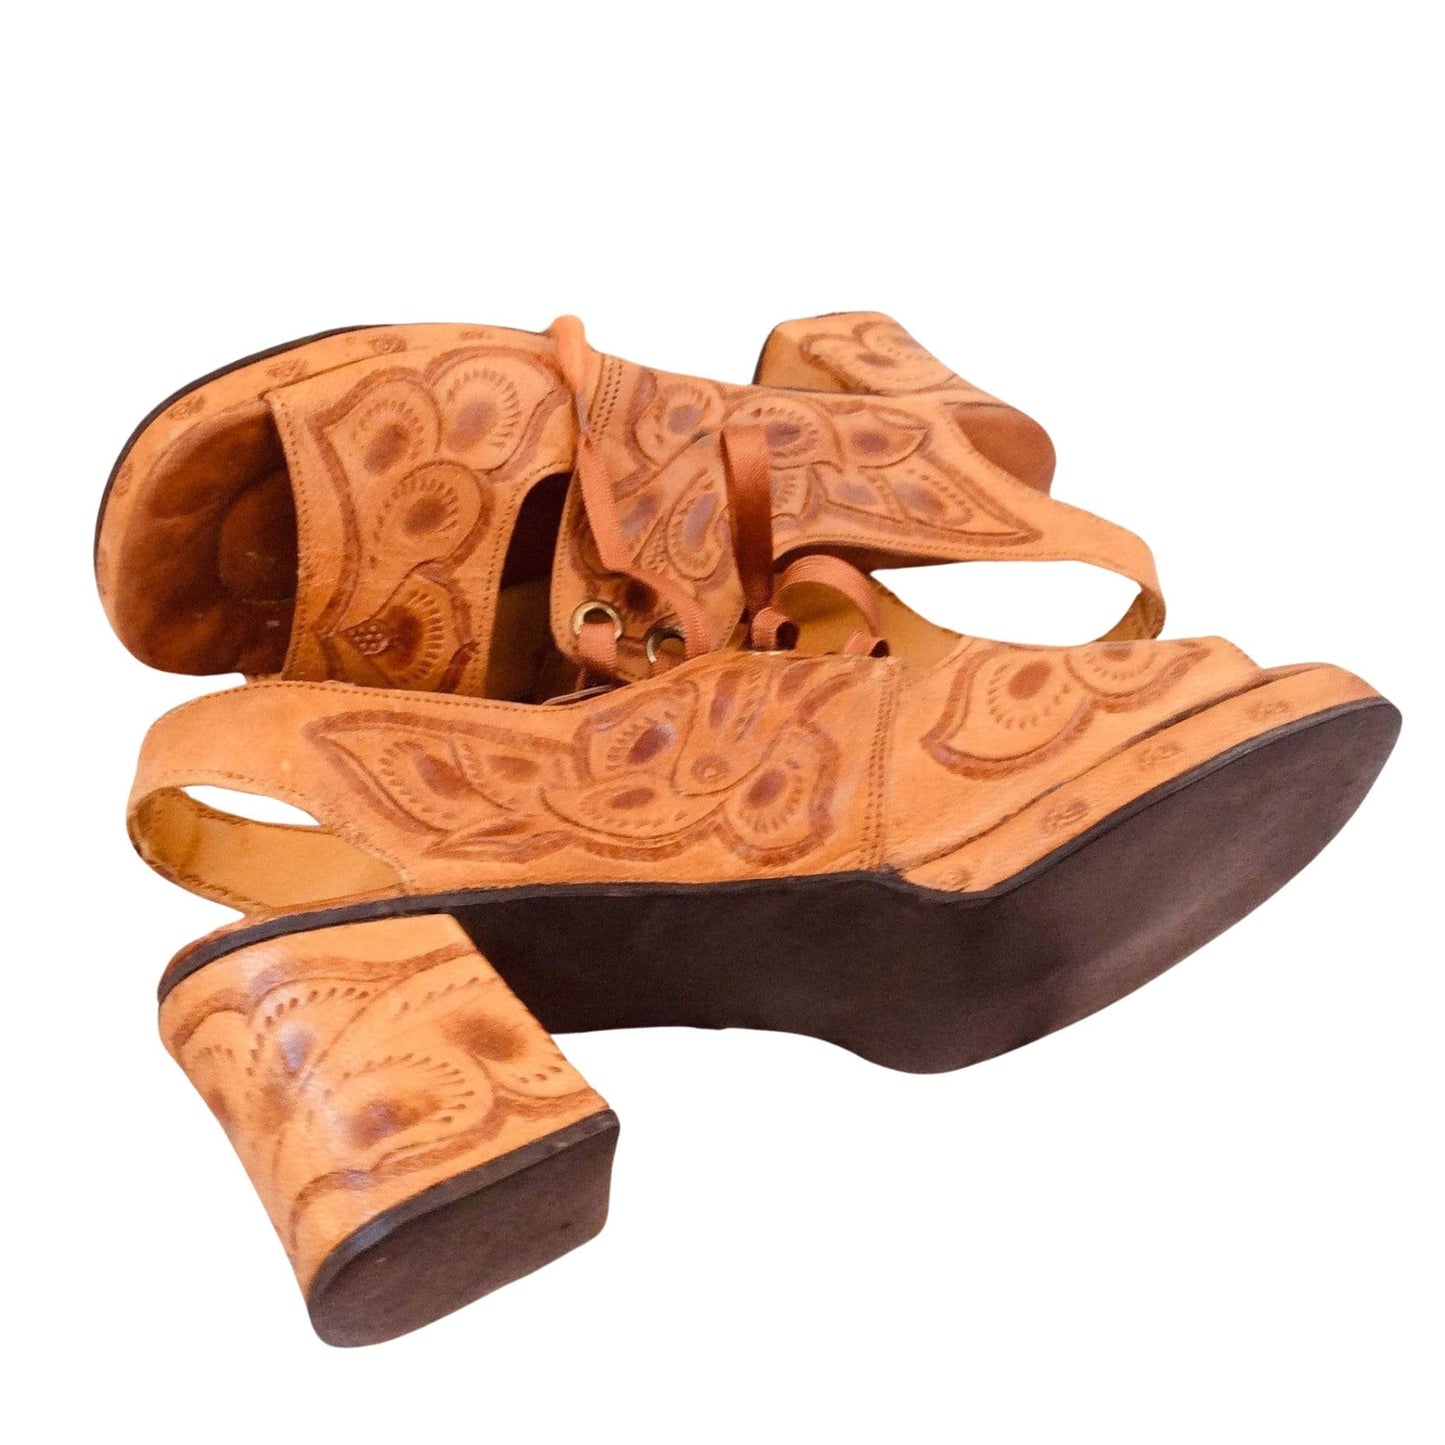 Joker Leather Sandals 7 / Tan / Vintage 1930s